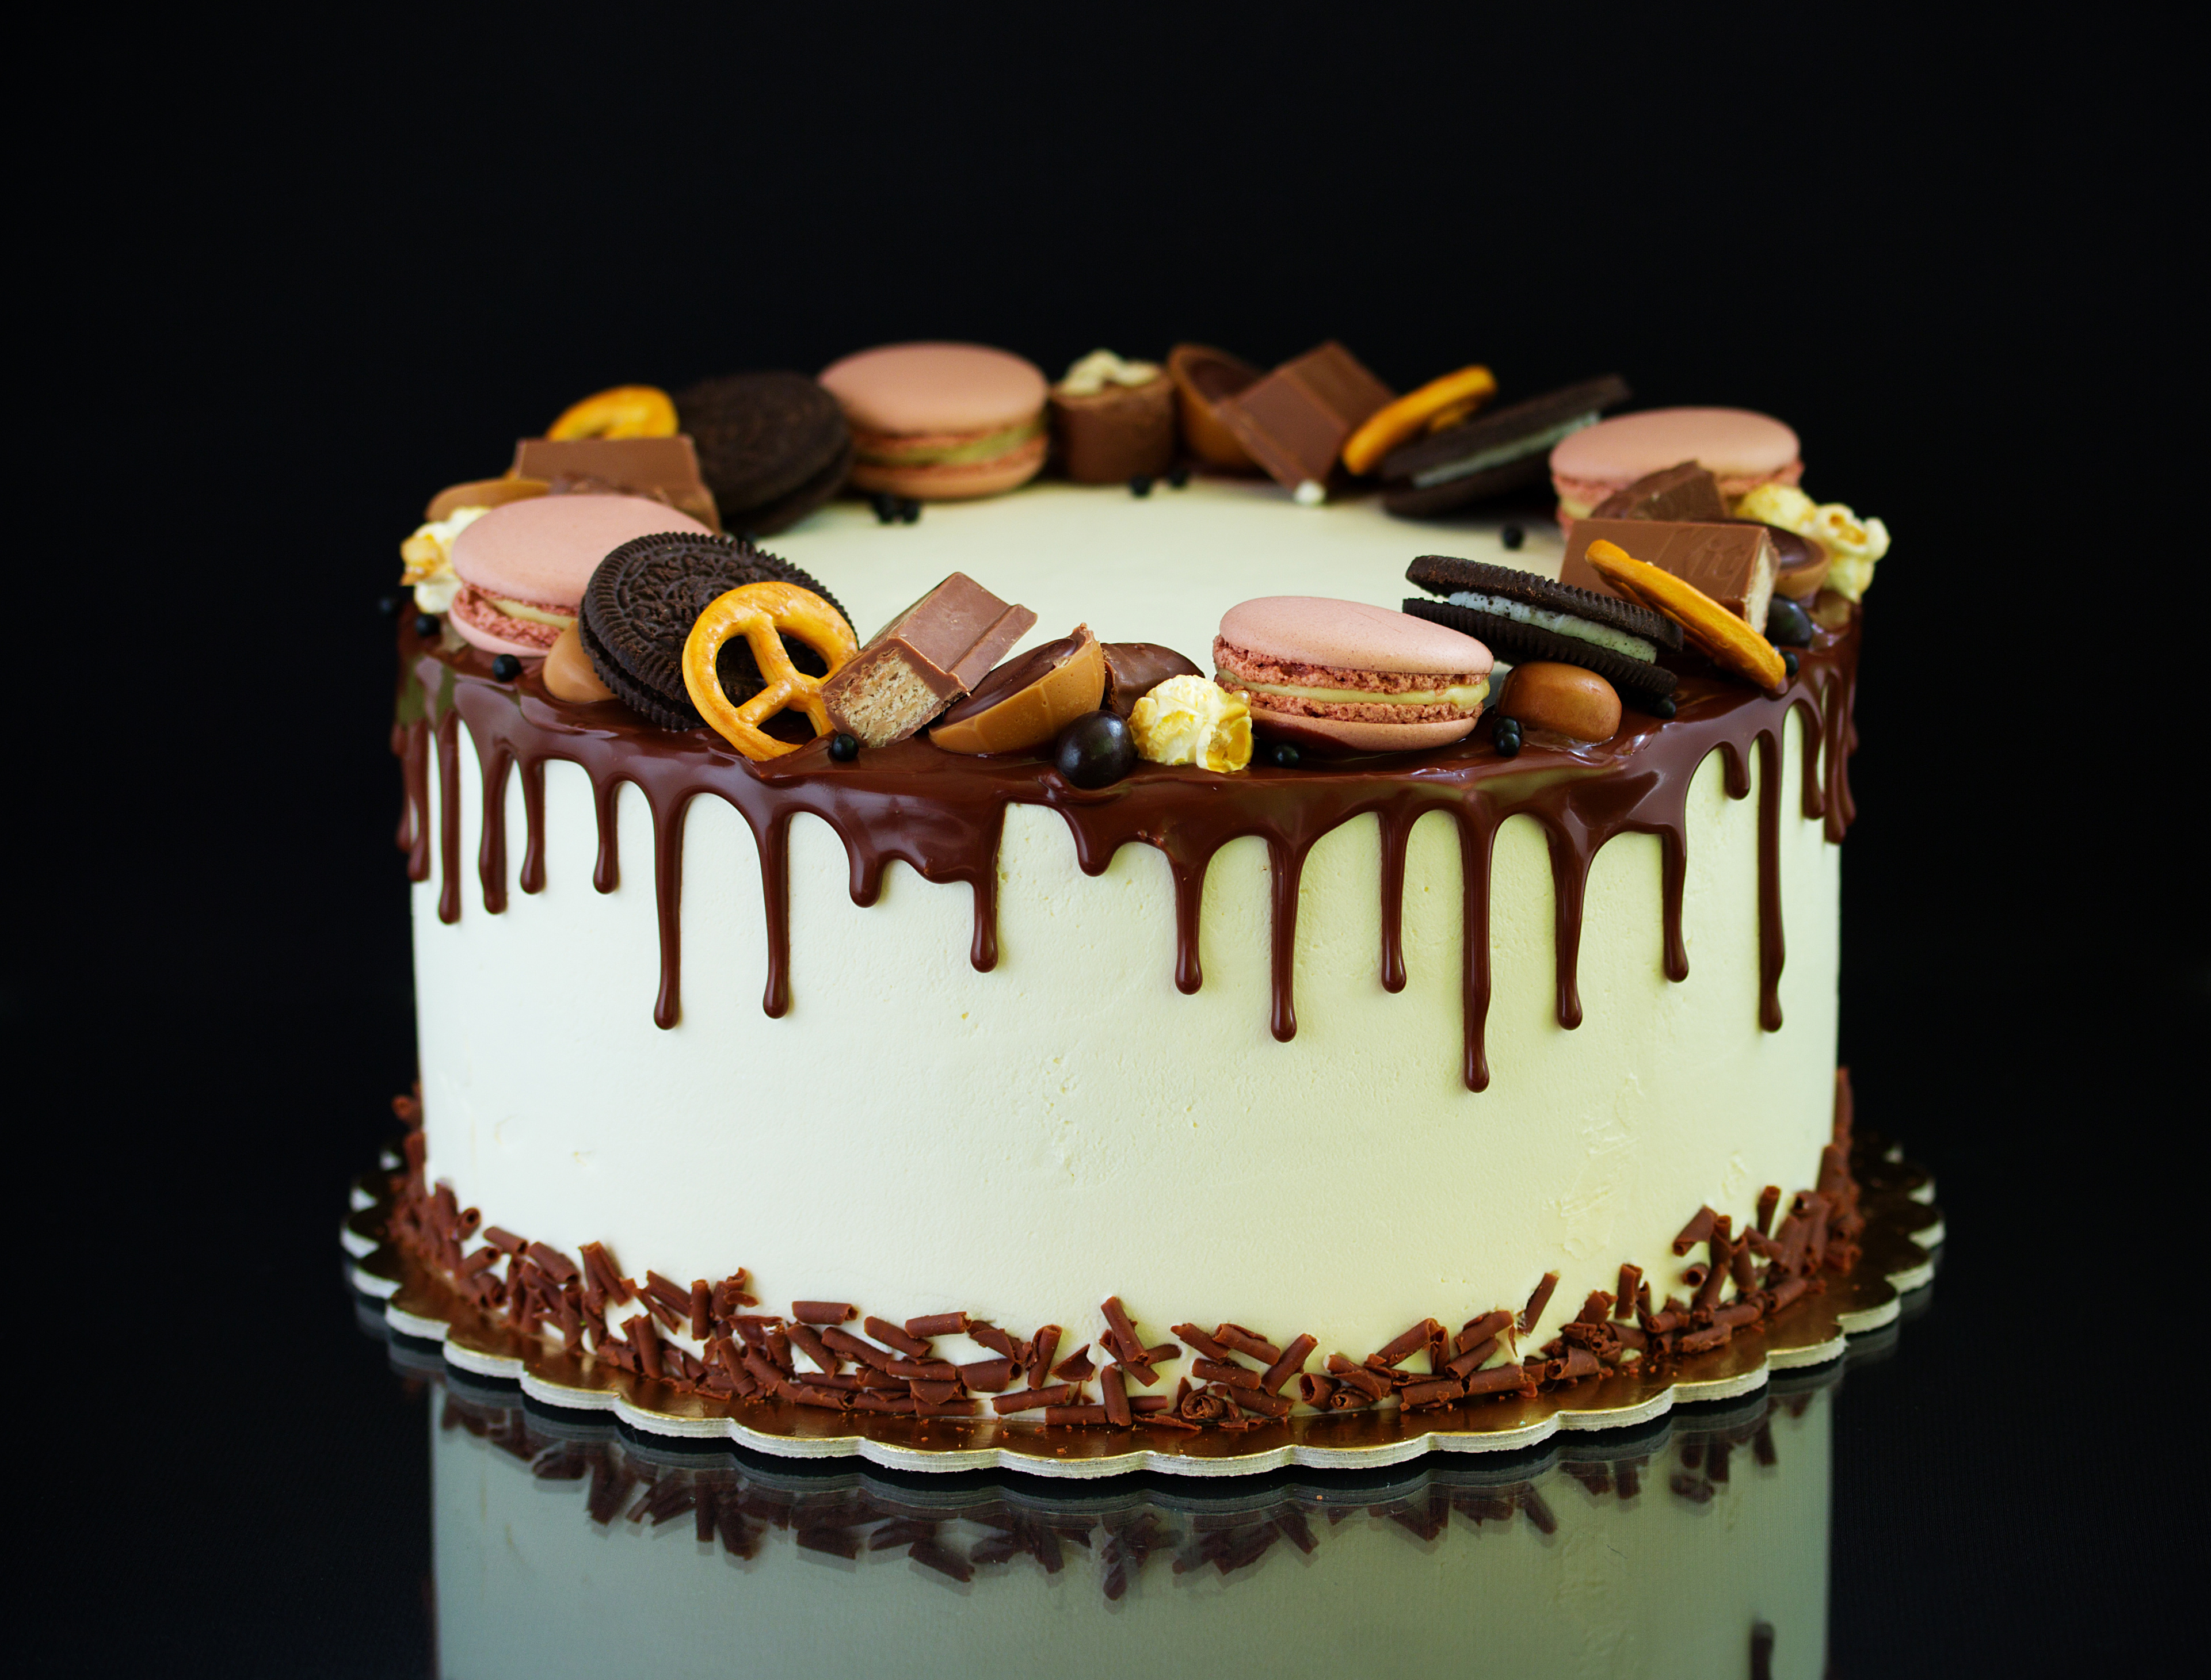 Cake Chocolate Macaron Oreo Pastry 3842x2920